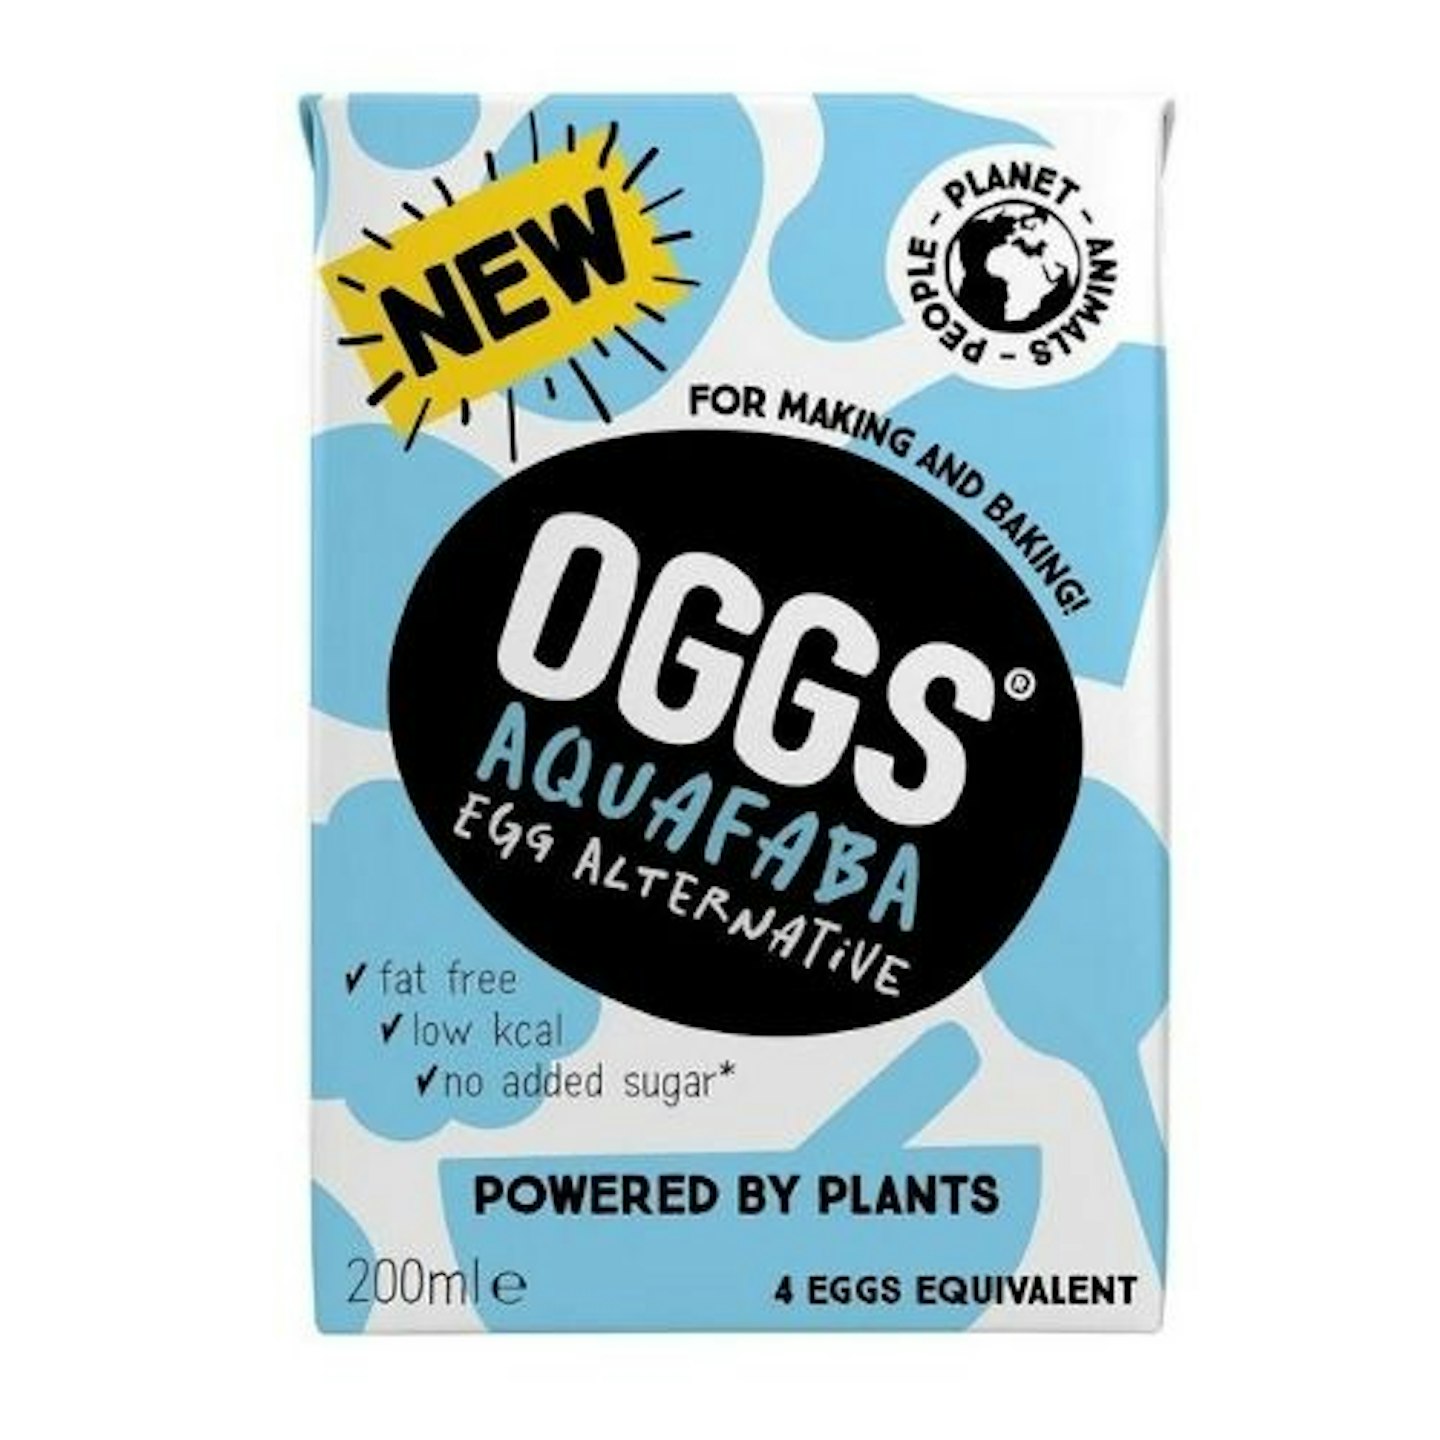 Oggs Vegan Aquafaba Egg Substitue